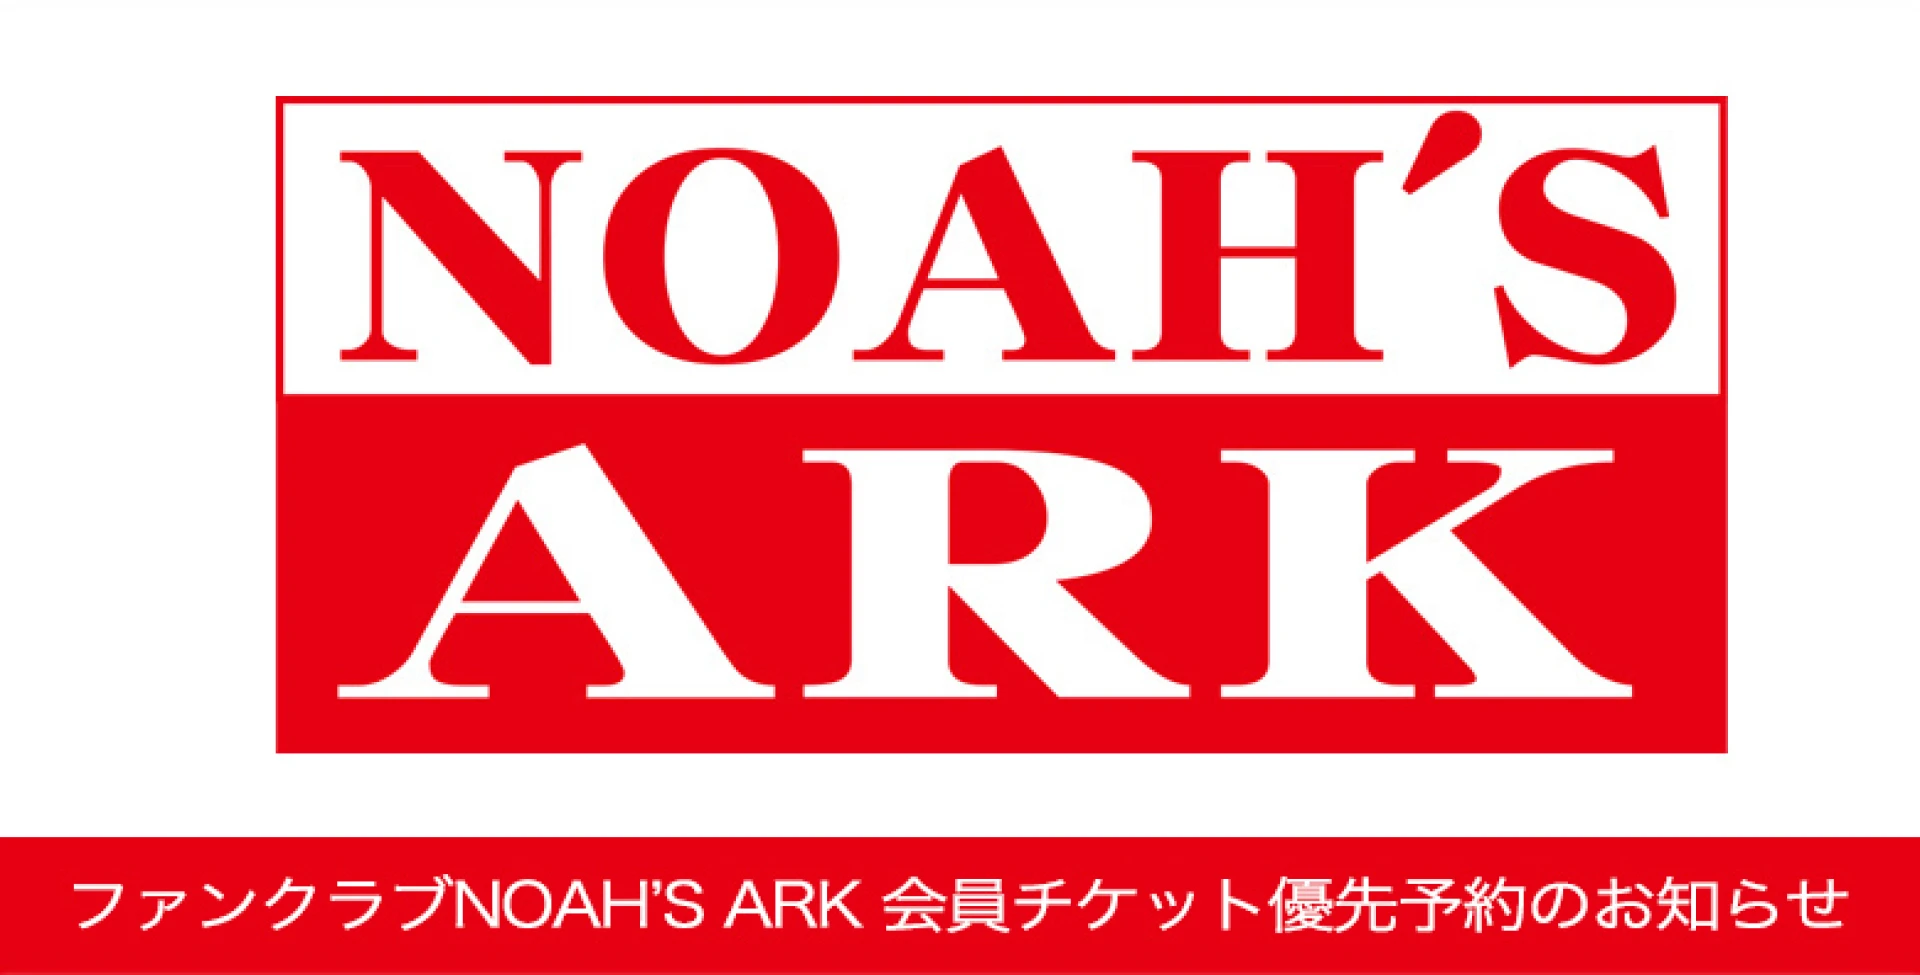 【2日18時より】ファンクラブNOAH'S ARK チケット優先予約受付のお知らせ